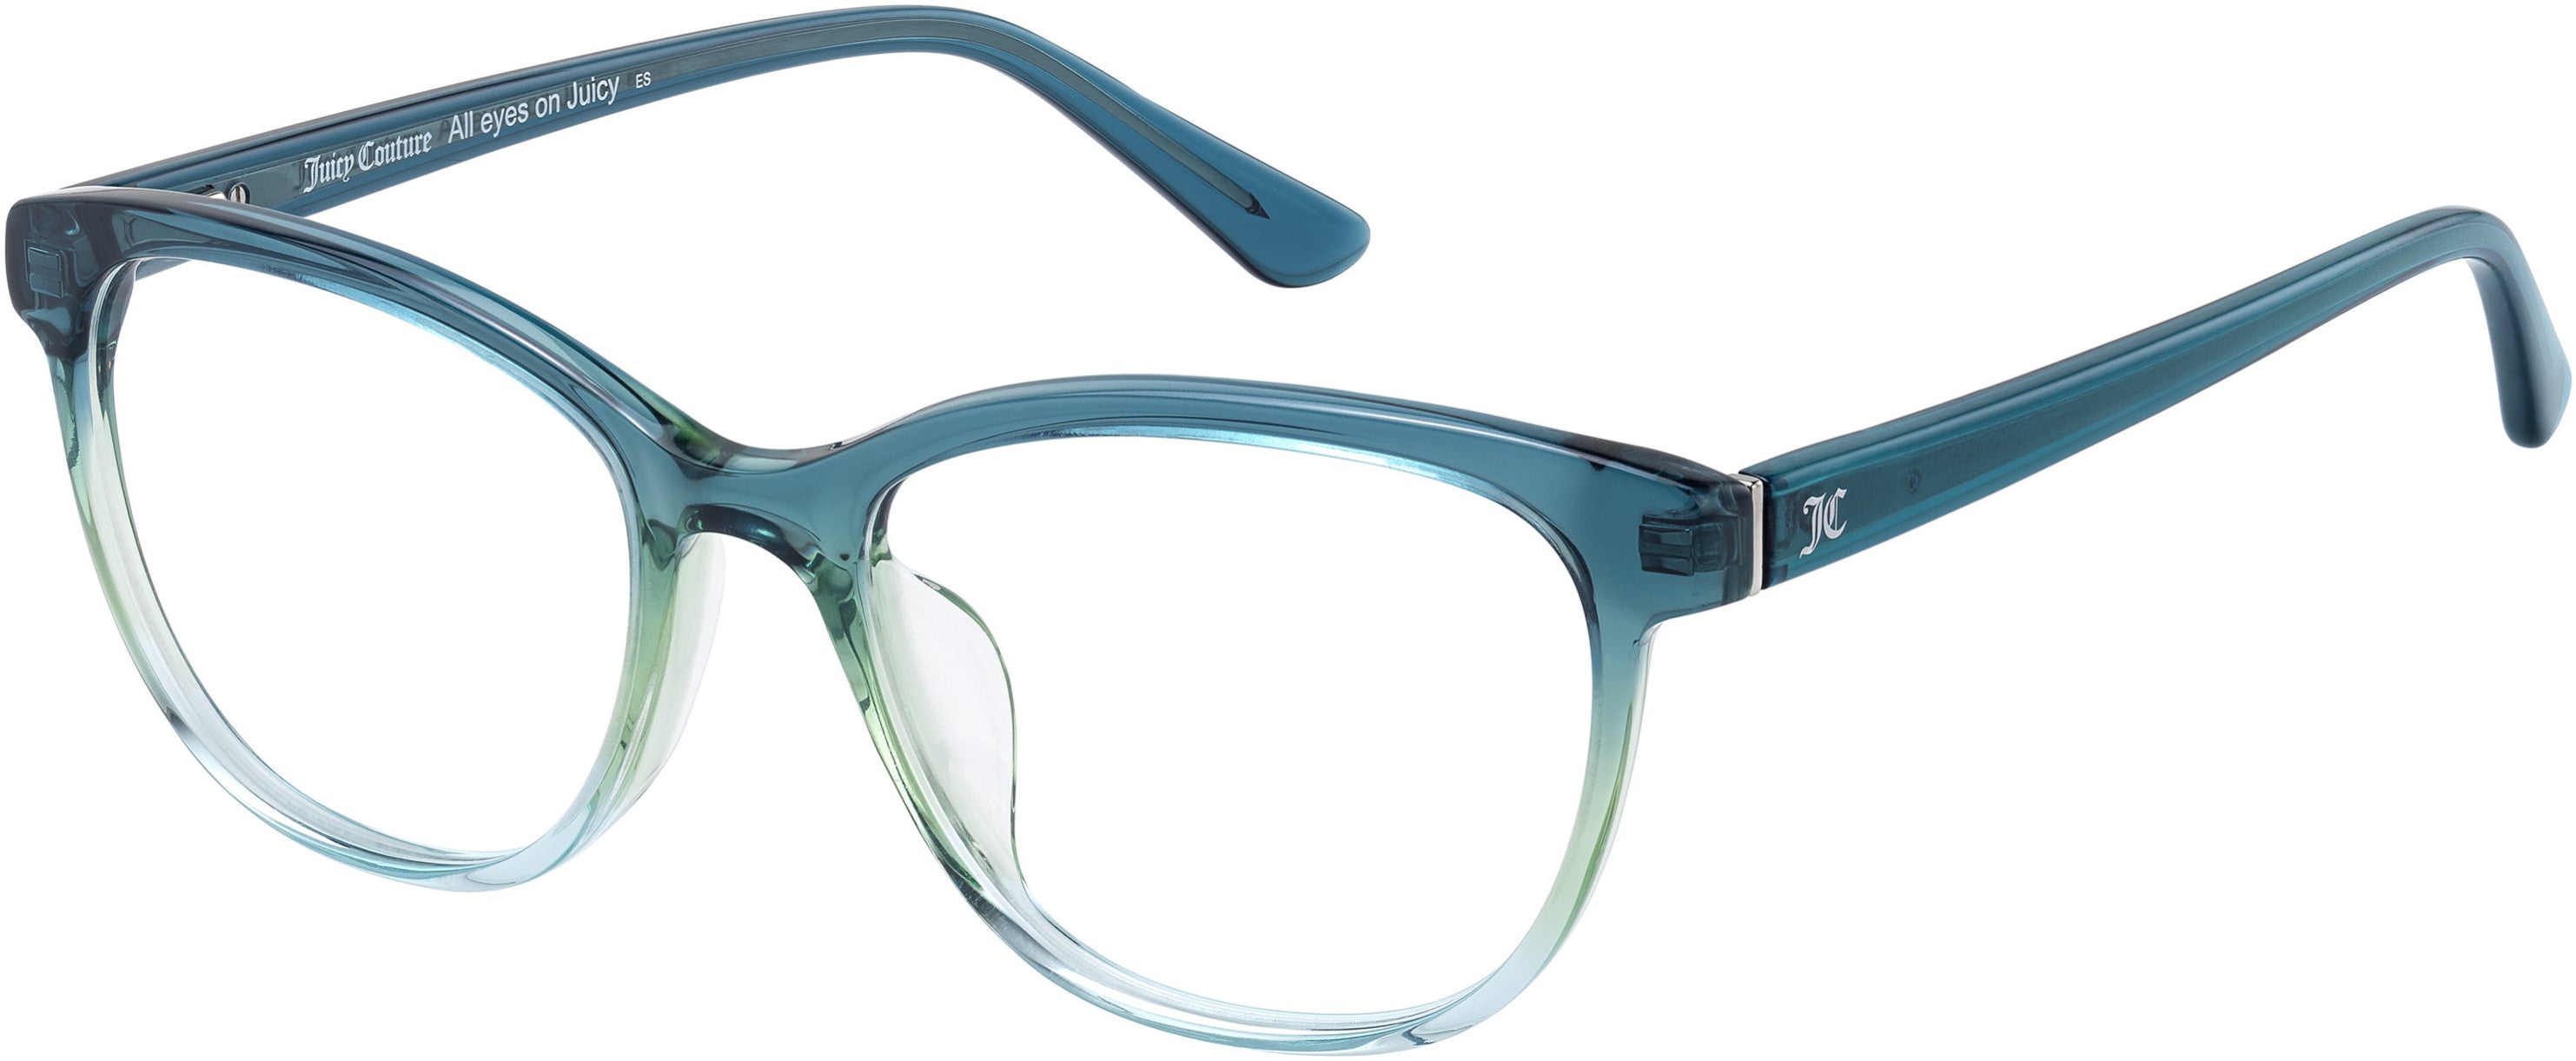 Juicy Couture Juicy 197 Rectangular Eyeglasses 0B7K-0B7K  Blue Teal (00 Demo Lens)